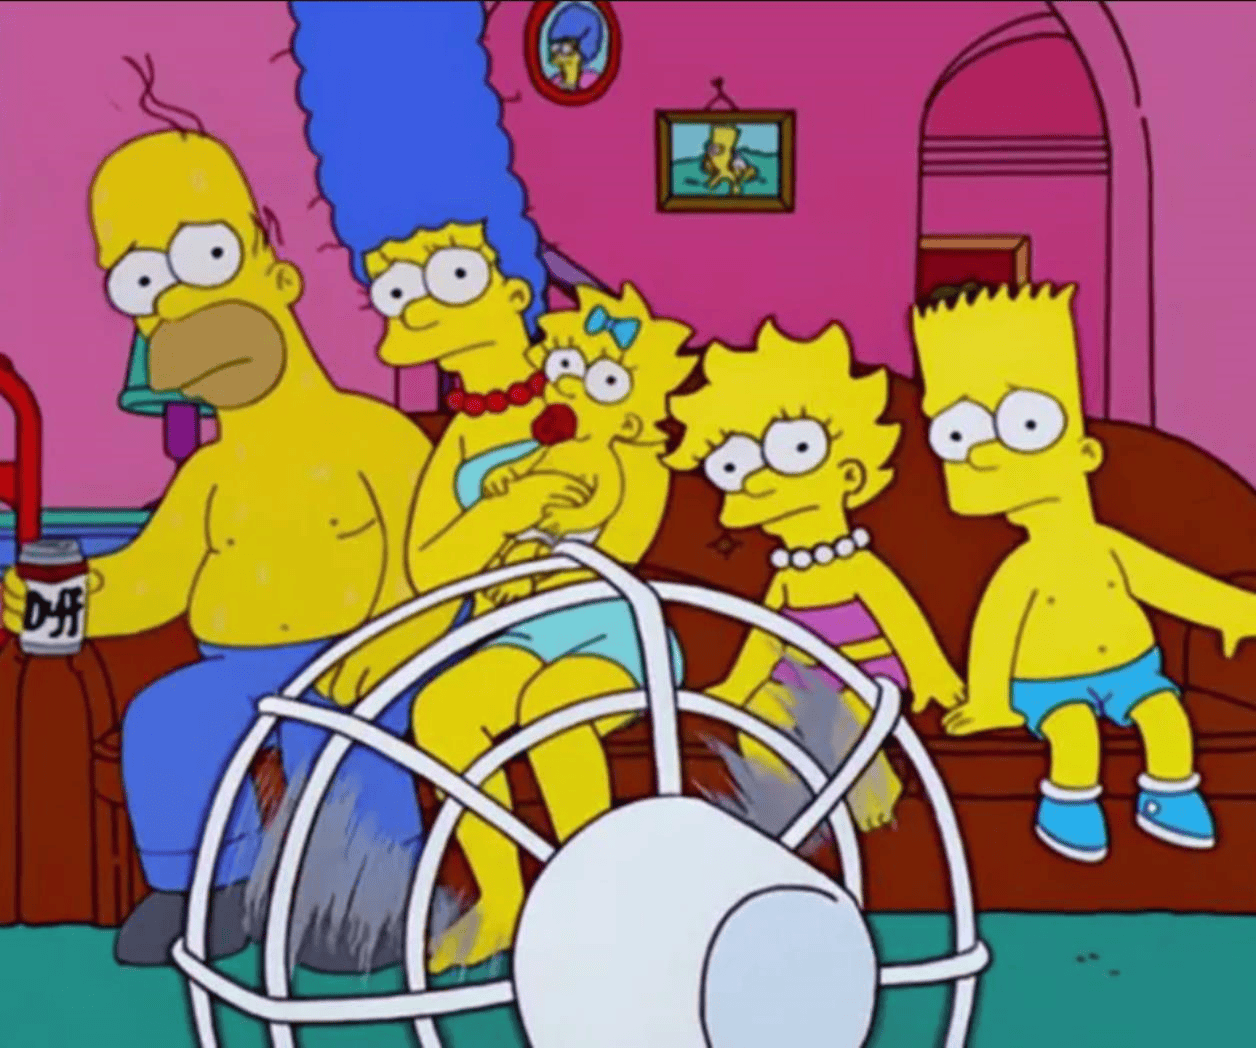 Apagón por calor: ¿Los Simpson lo predijeron?